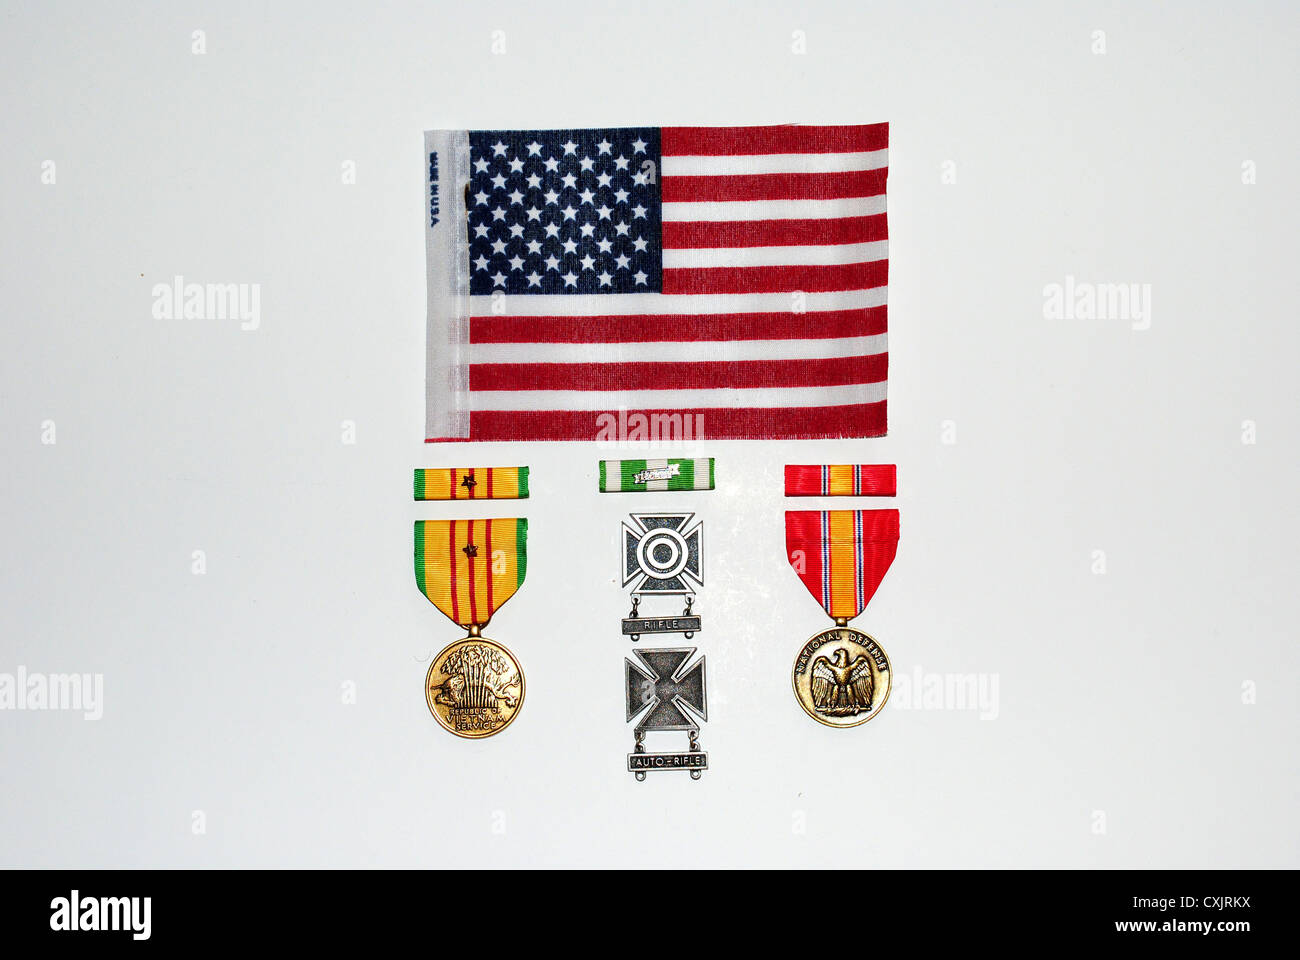 Meine Armee, militärischen Service Awards, fotografiert mit der amerikanischen Flagge ausgestellt um zu sagen, "Danke für dienen unser Land ''. 1968-1969 Stockfoto